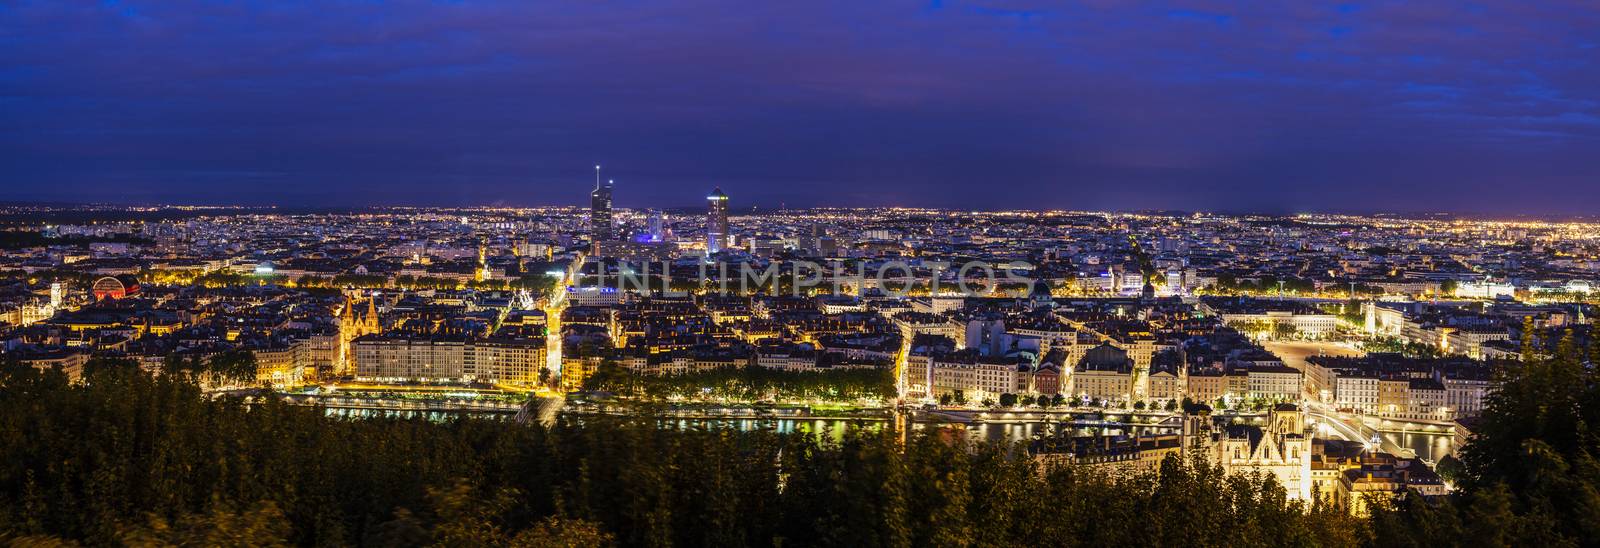 Lyon panorama at night by benkrut